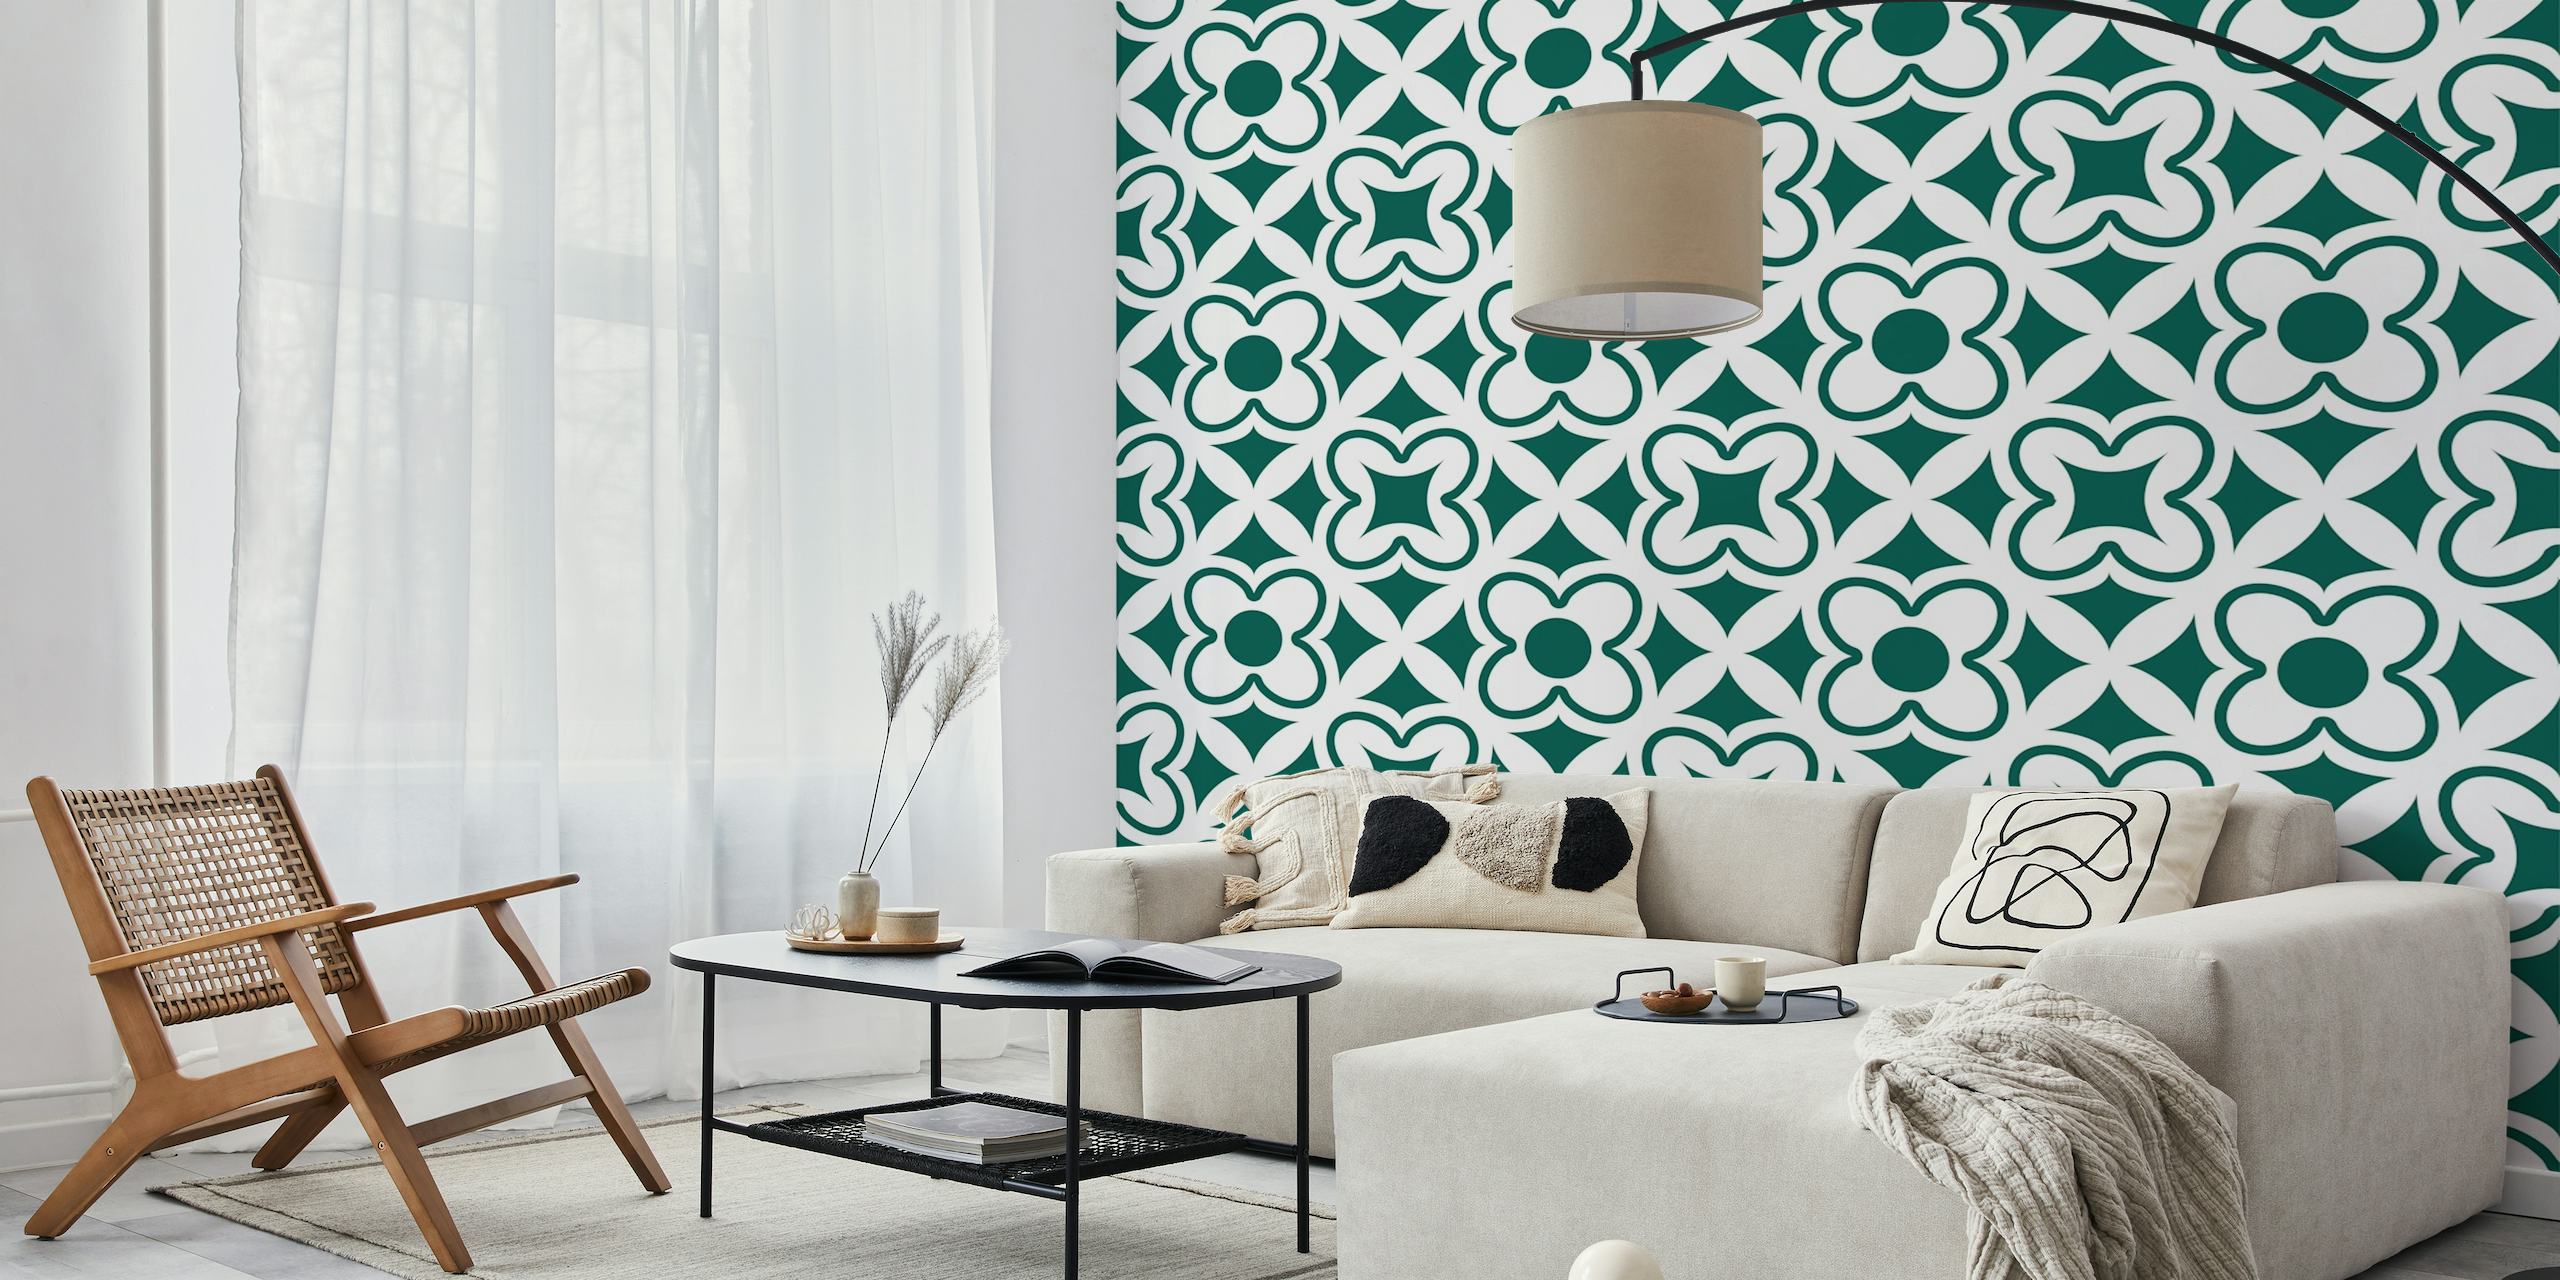 Turkish tile floral pattern forest green behang